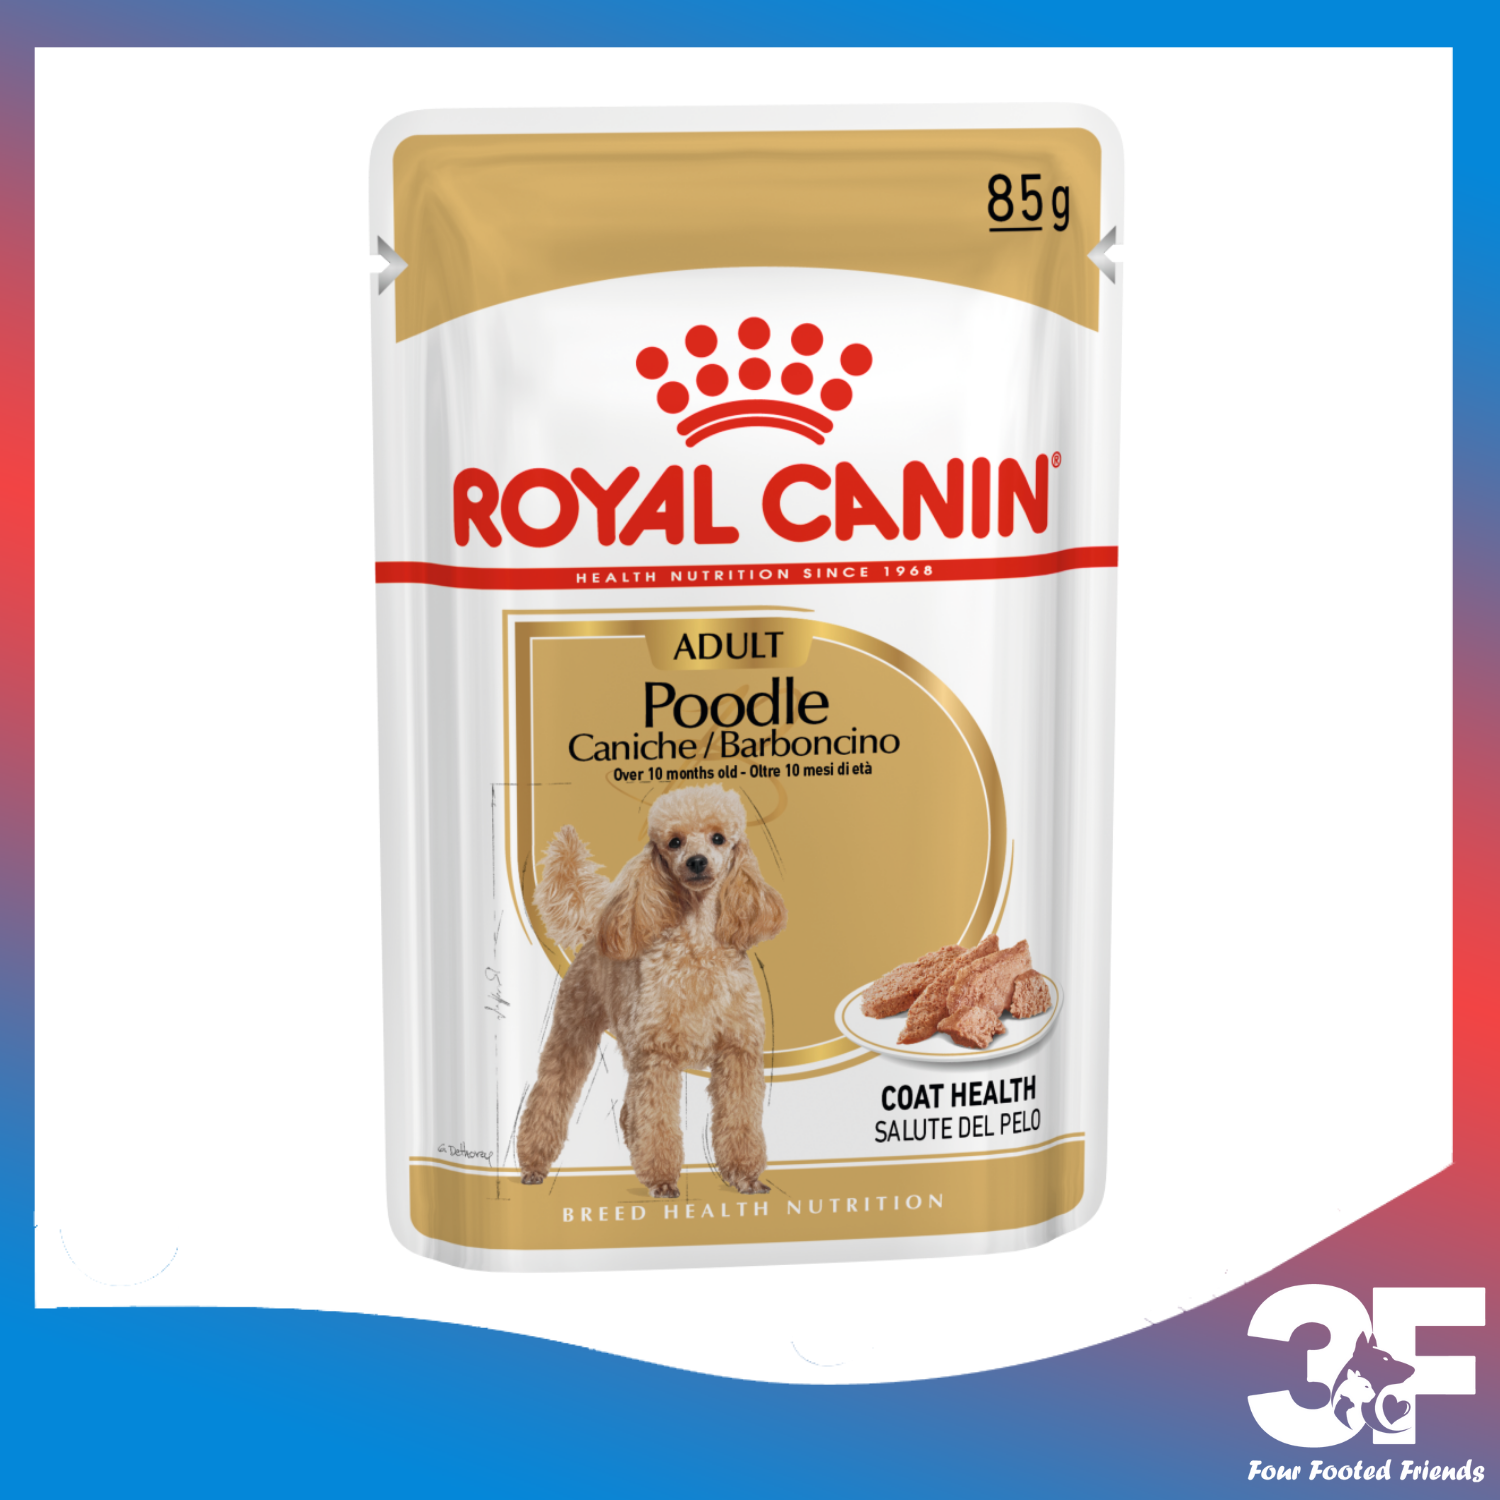 Pate Thức Ăn Ướt Xay Nhuyễn Dành Cho Chó Poodle Trưởng Thành Royal Canin Poodle Wet